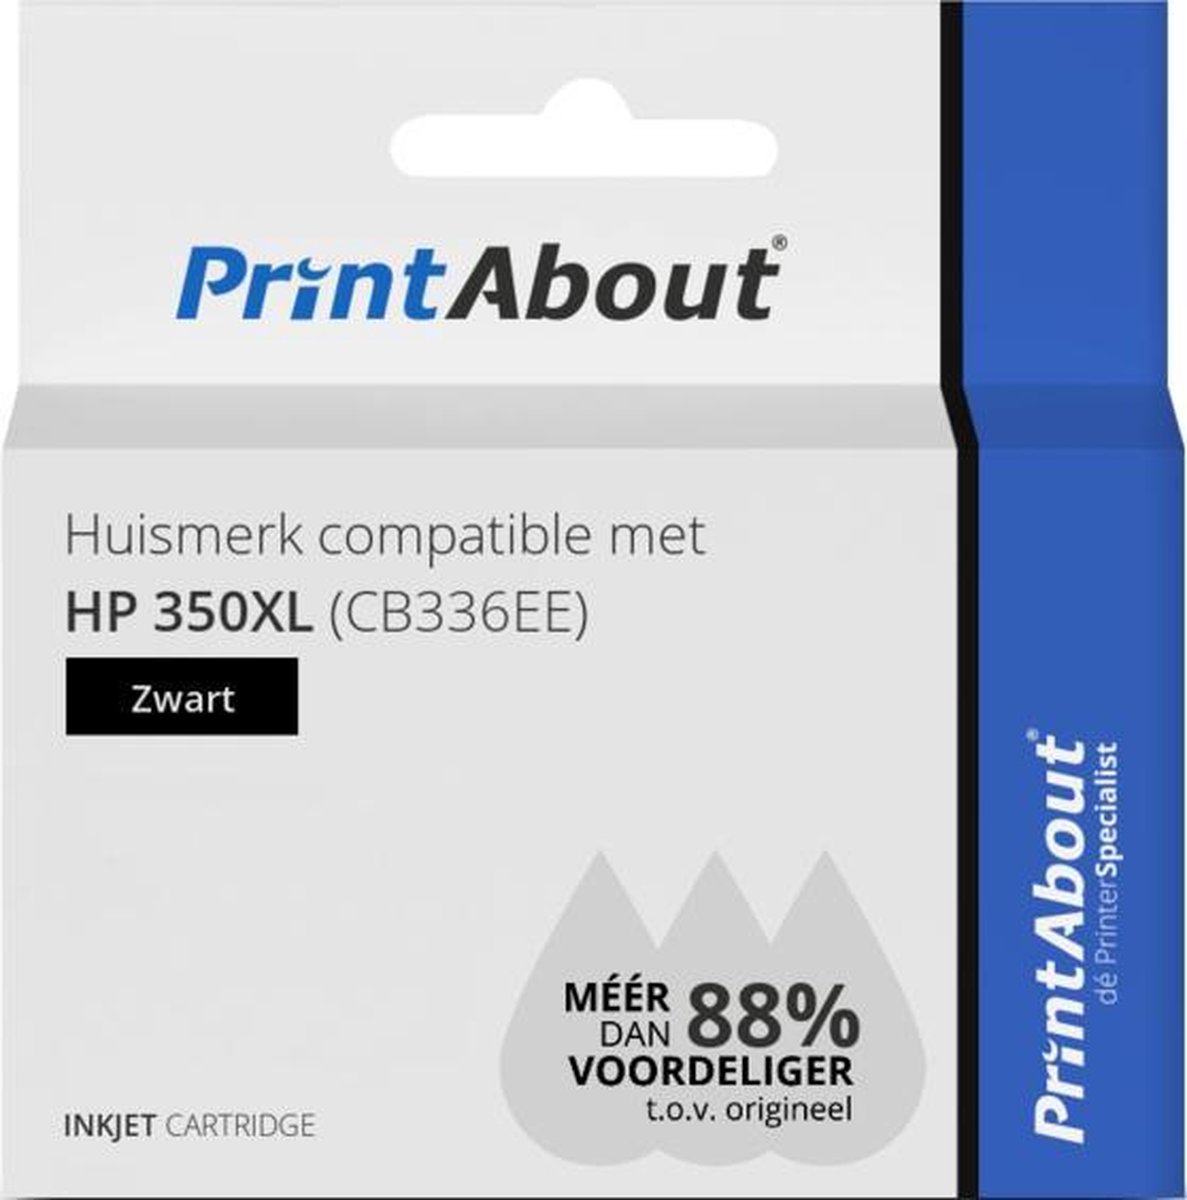 PrintAbout Huismerk compatible met HP 350XL (CB336EE) Inktcartridge Hoge capaciteit - Zwart